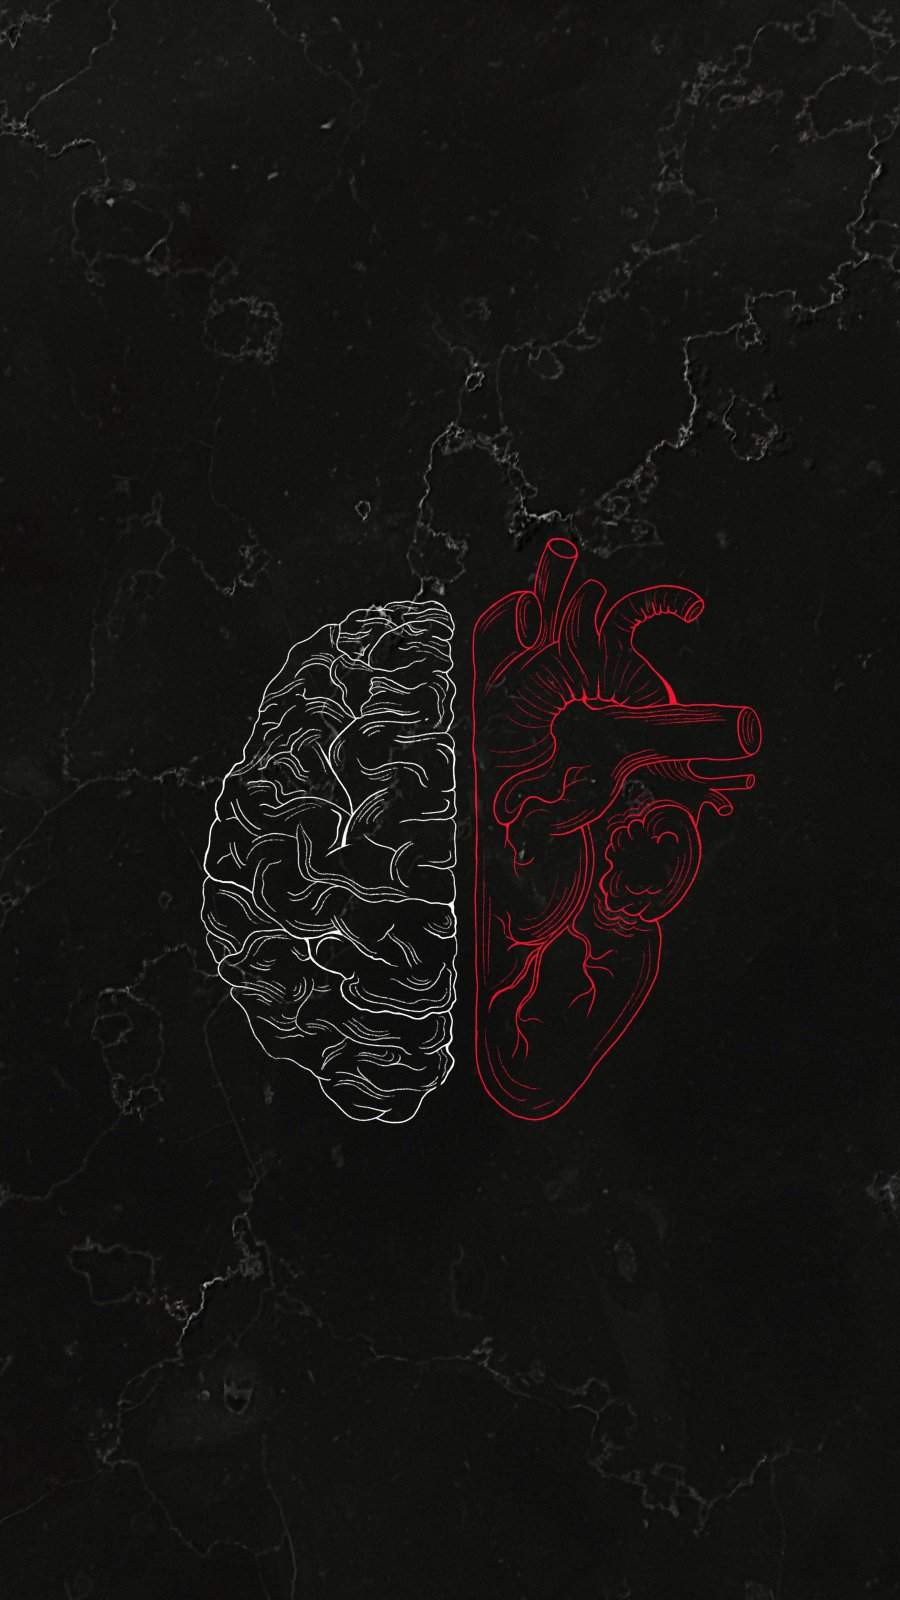 20+] Brain vs Heart Wallpapers - WallpaperSafari